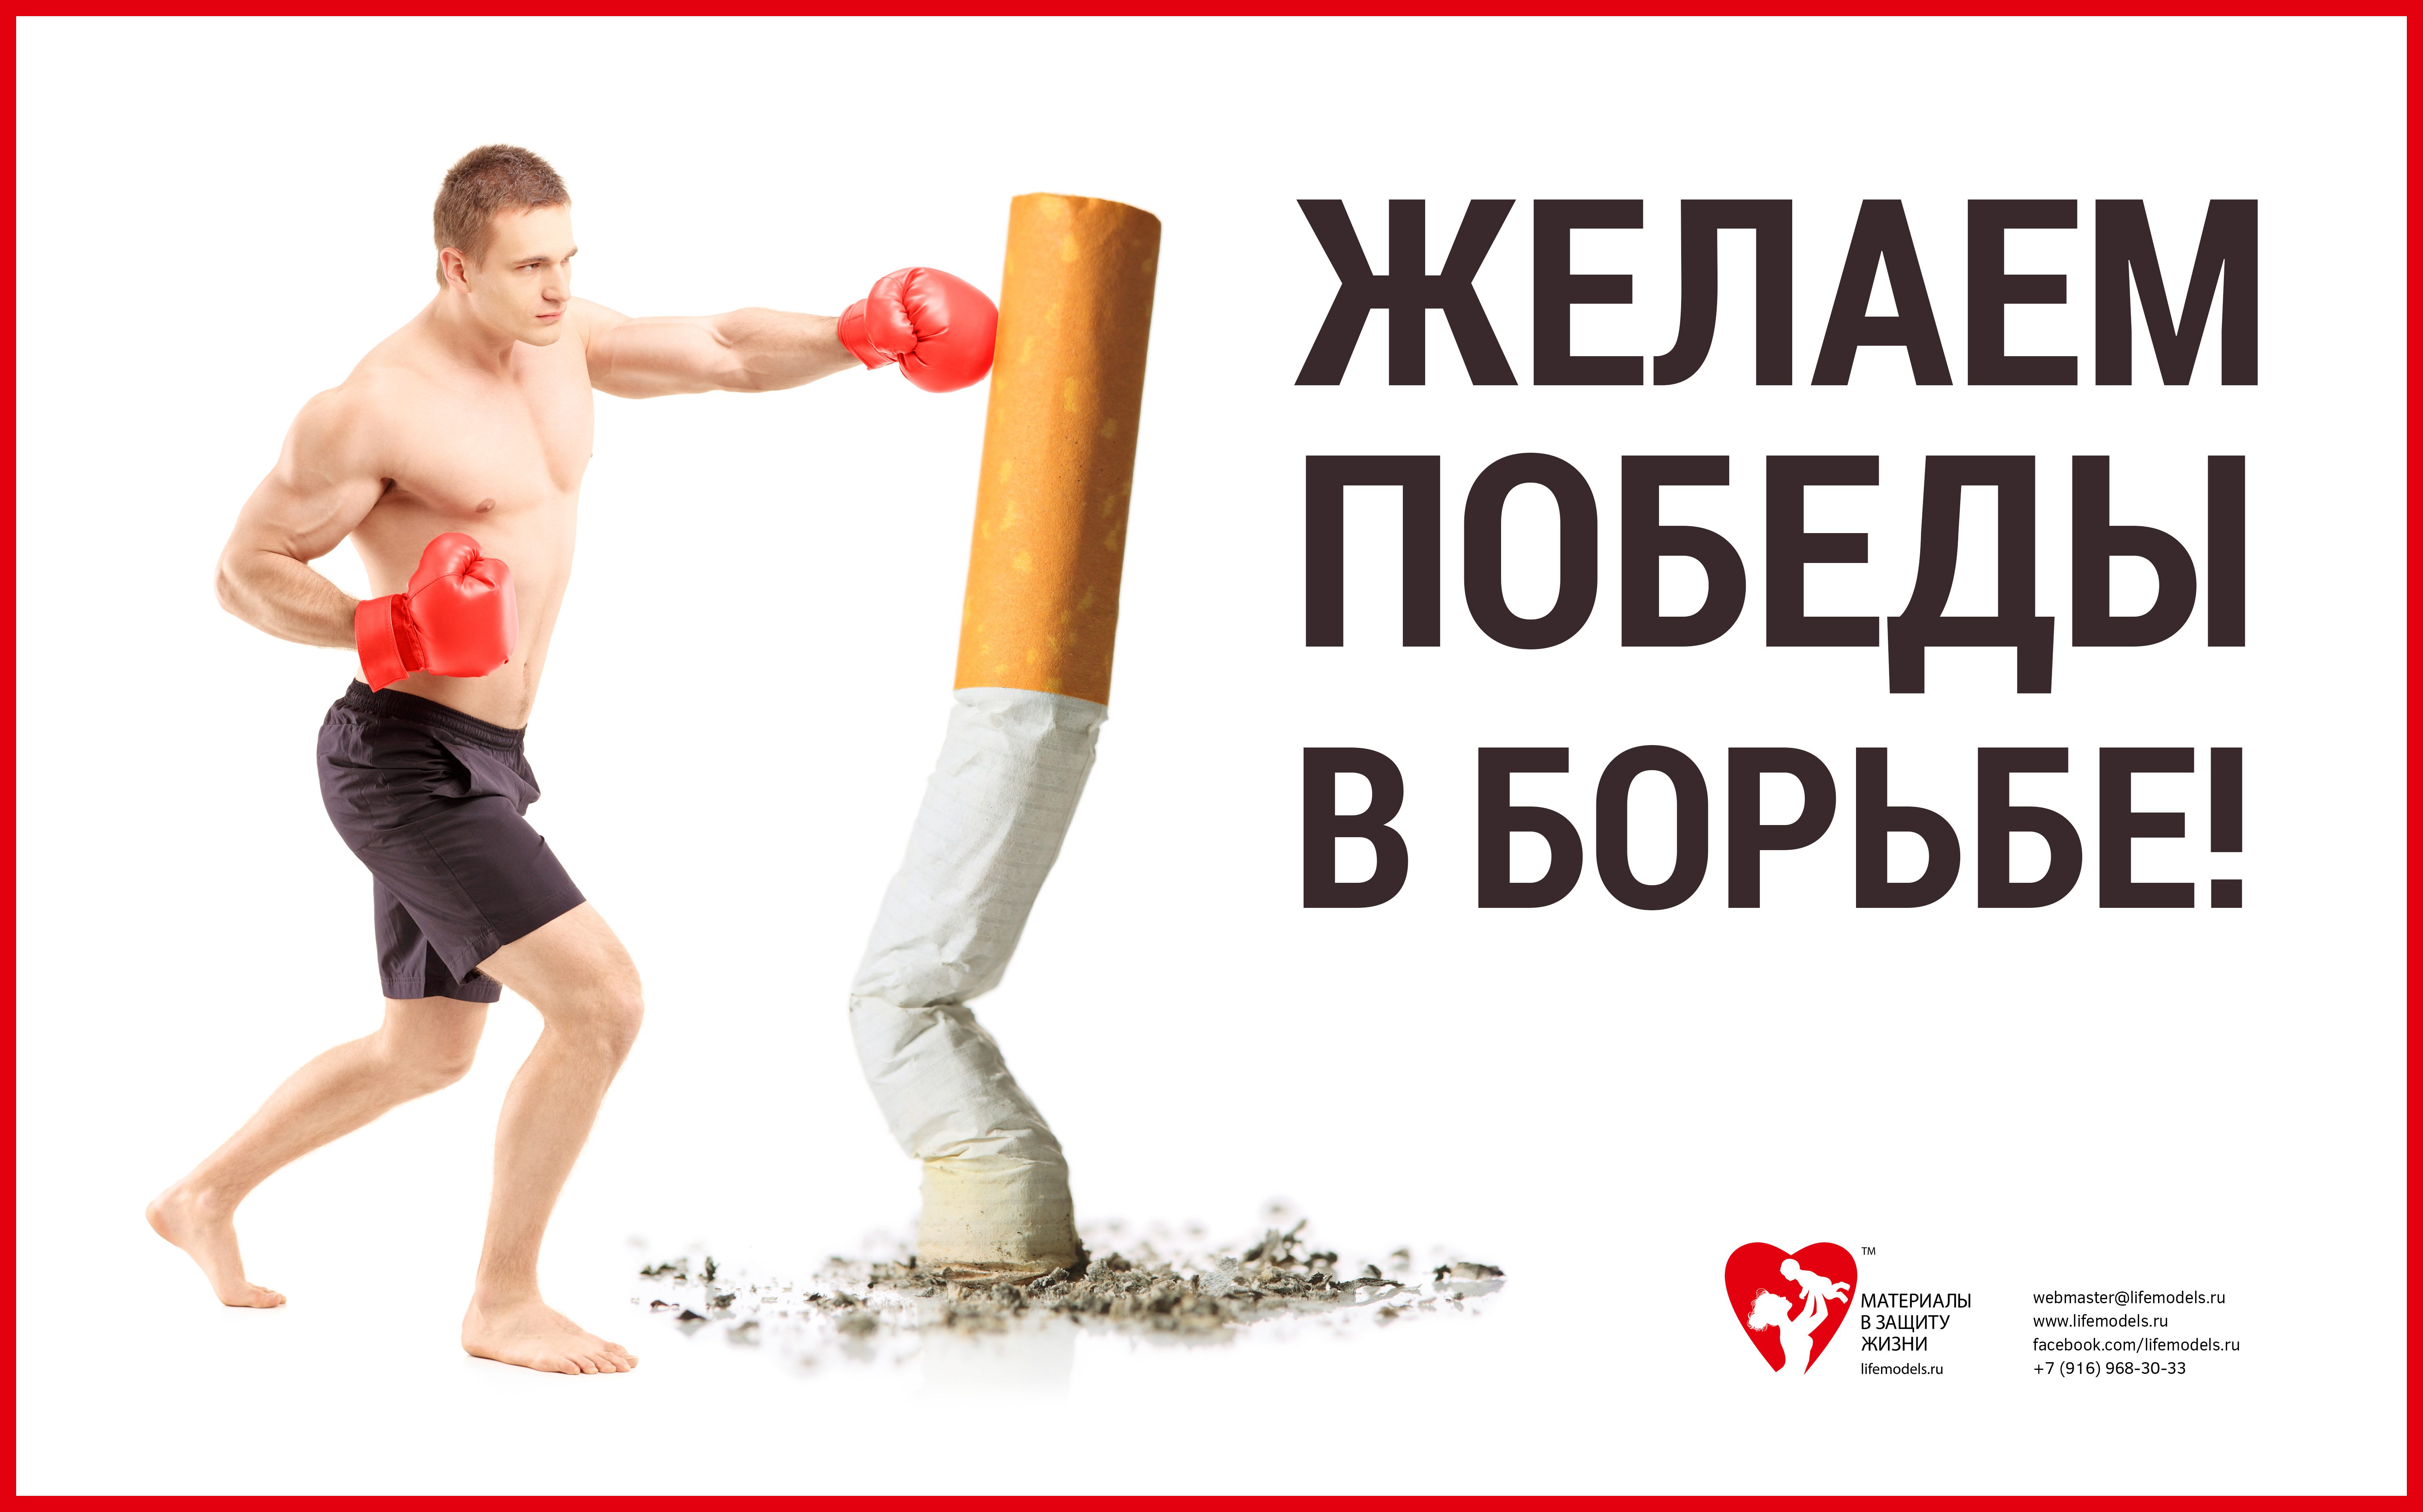 Боремся за победу слышим стартовый. Баннер против курения. Спорт против курения. Борьба против курения. Реклама борьба с курением.